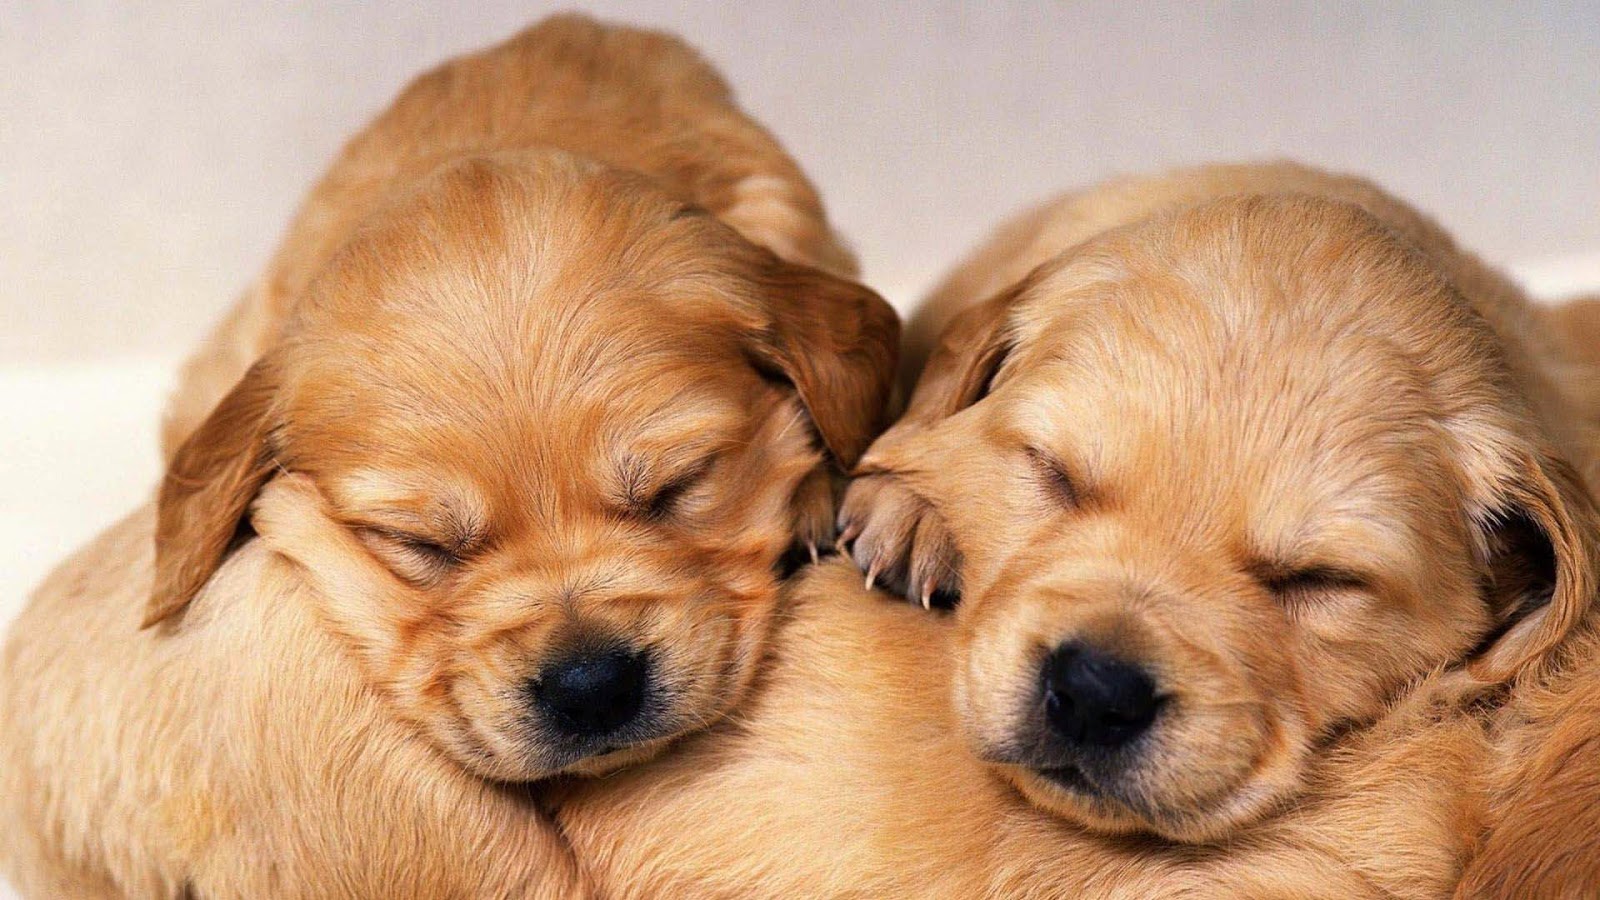 Cute Golden Retriever Puppies Wallpaper image | Free HD Wallpaper